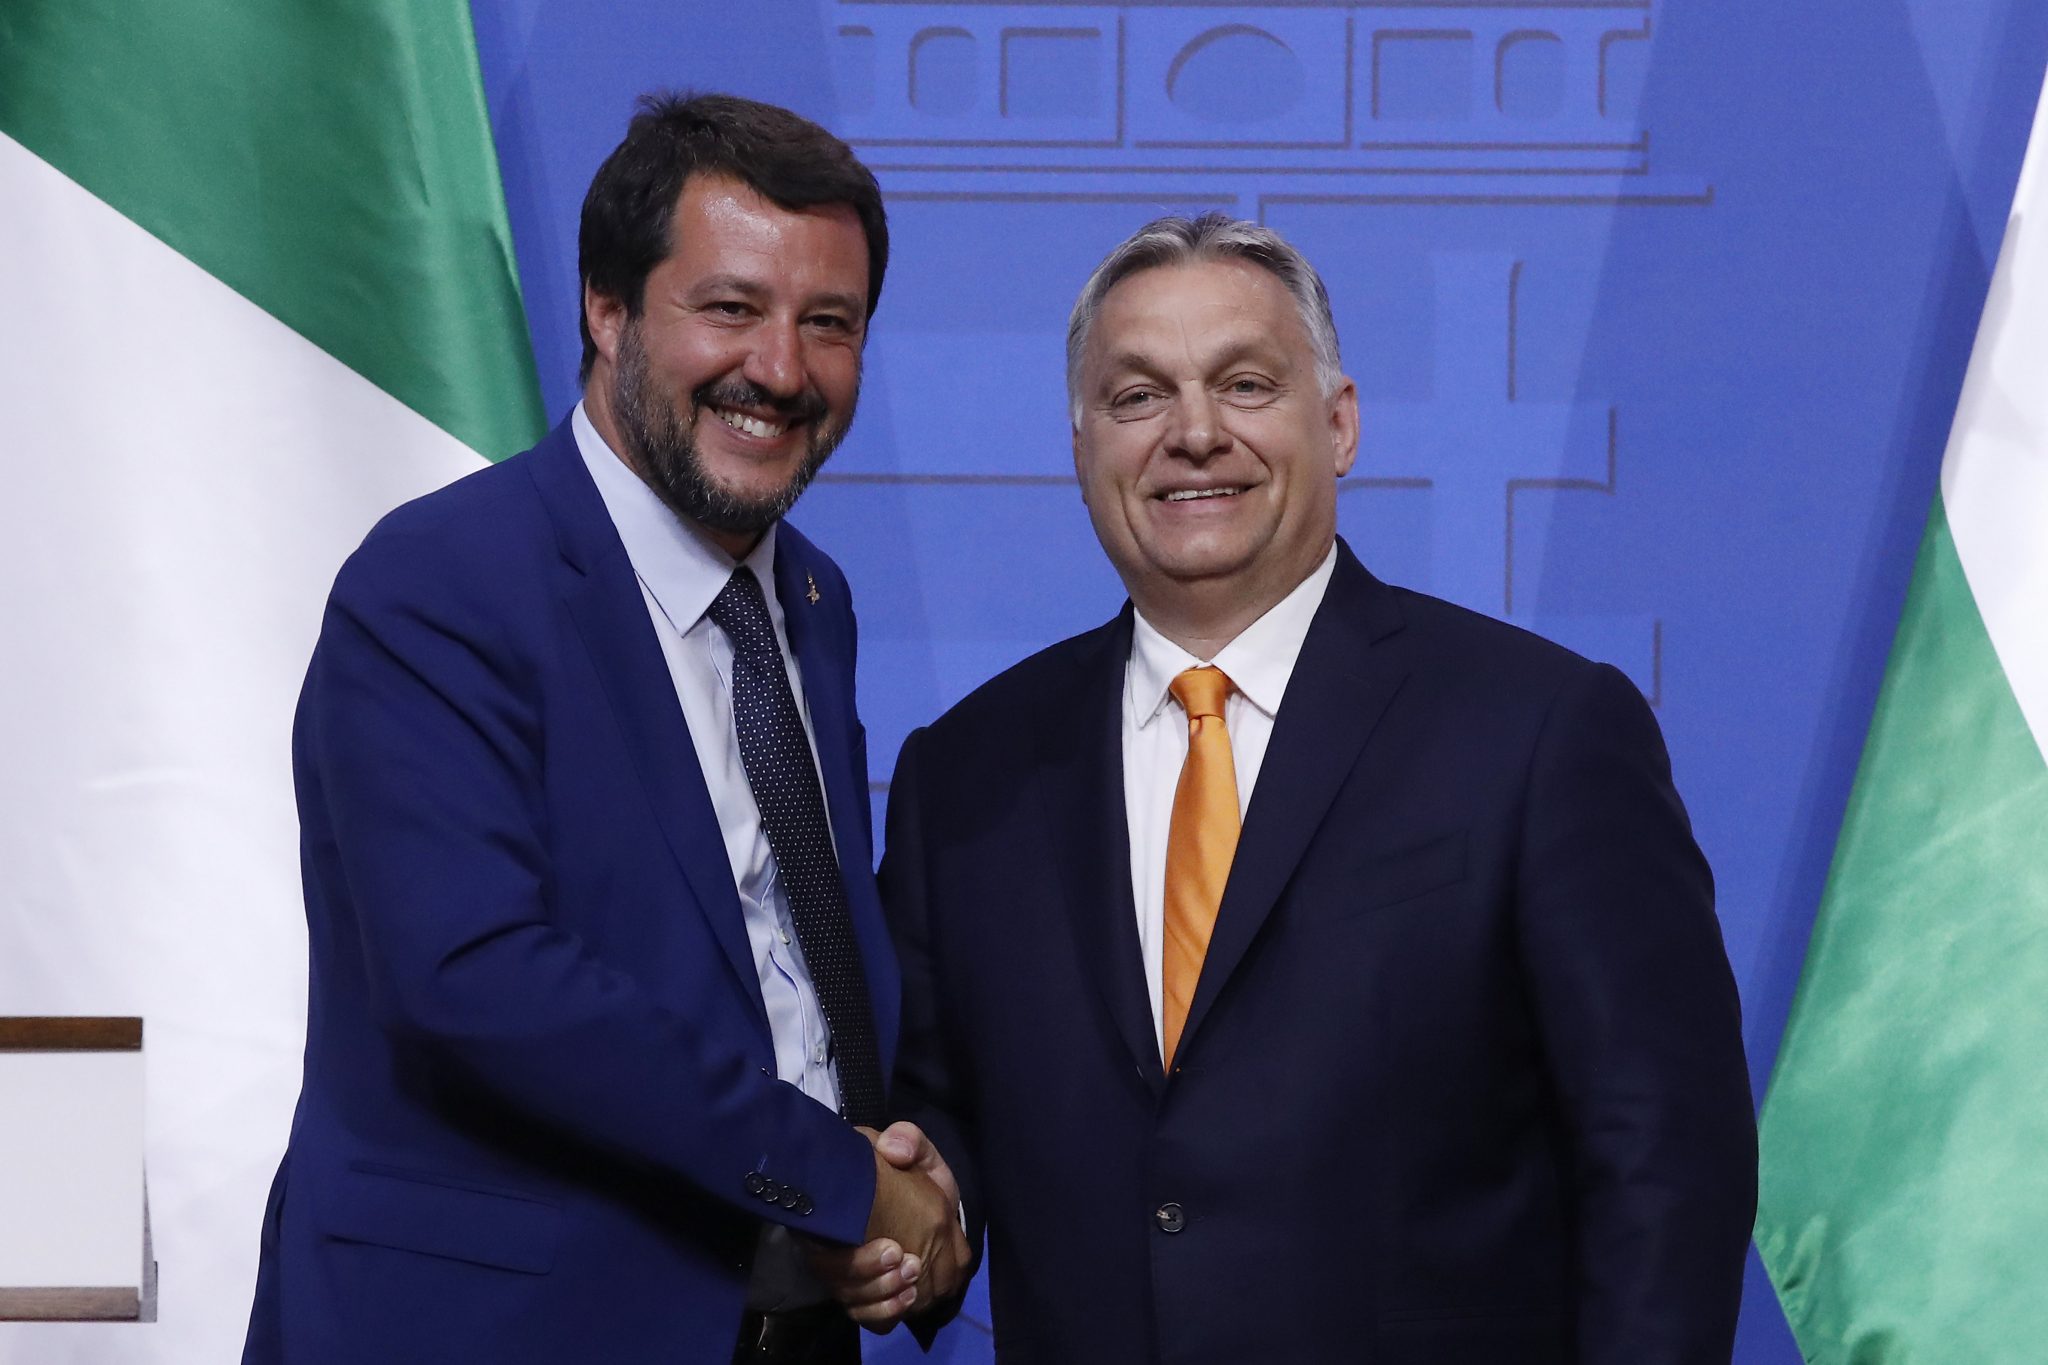 Orbán, Salvini, and Kaczyński In Talks to Create New EU Party Group